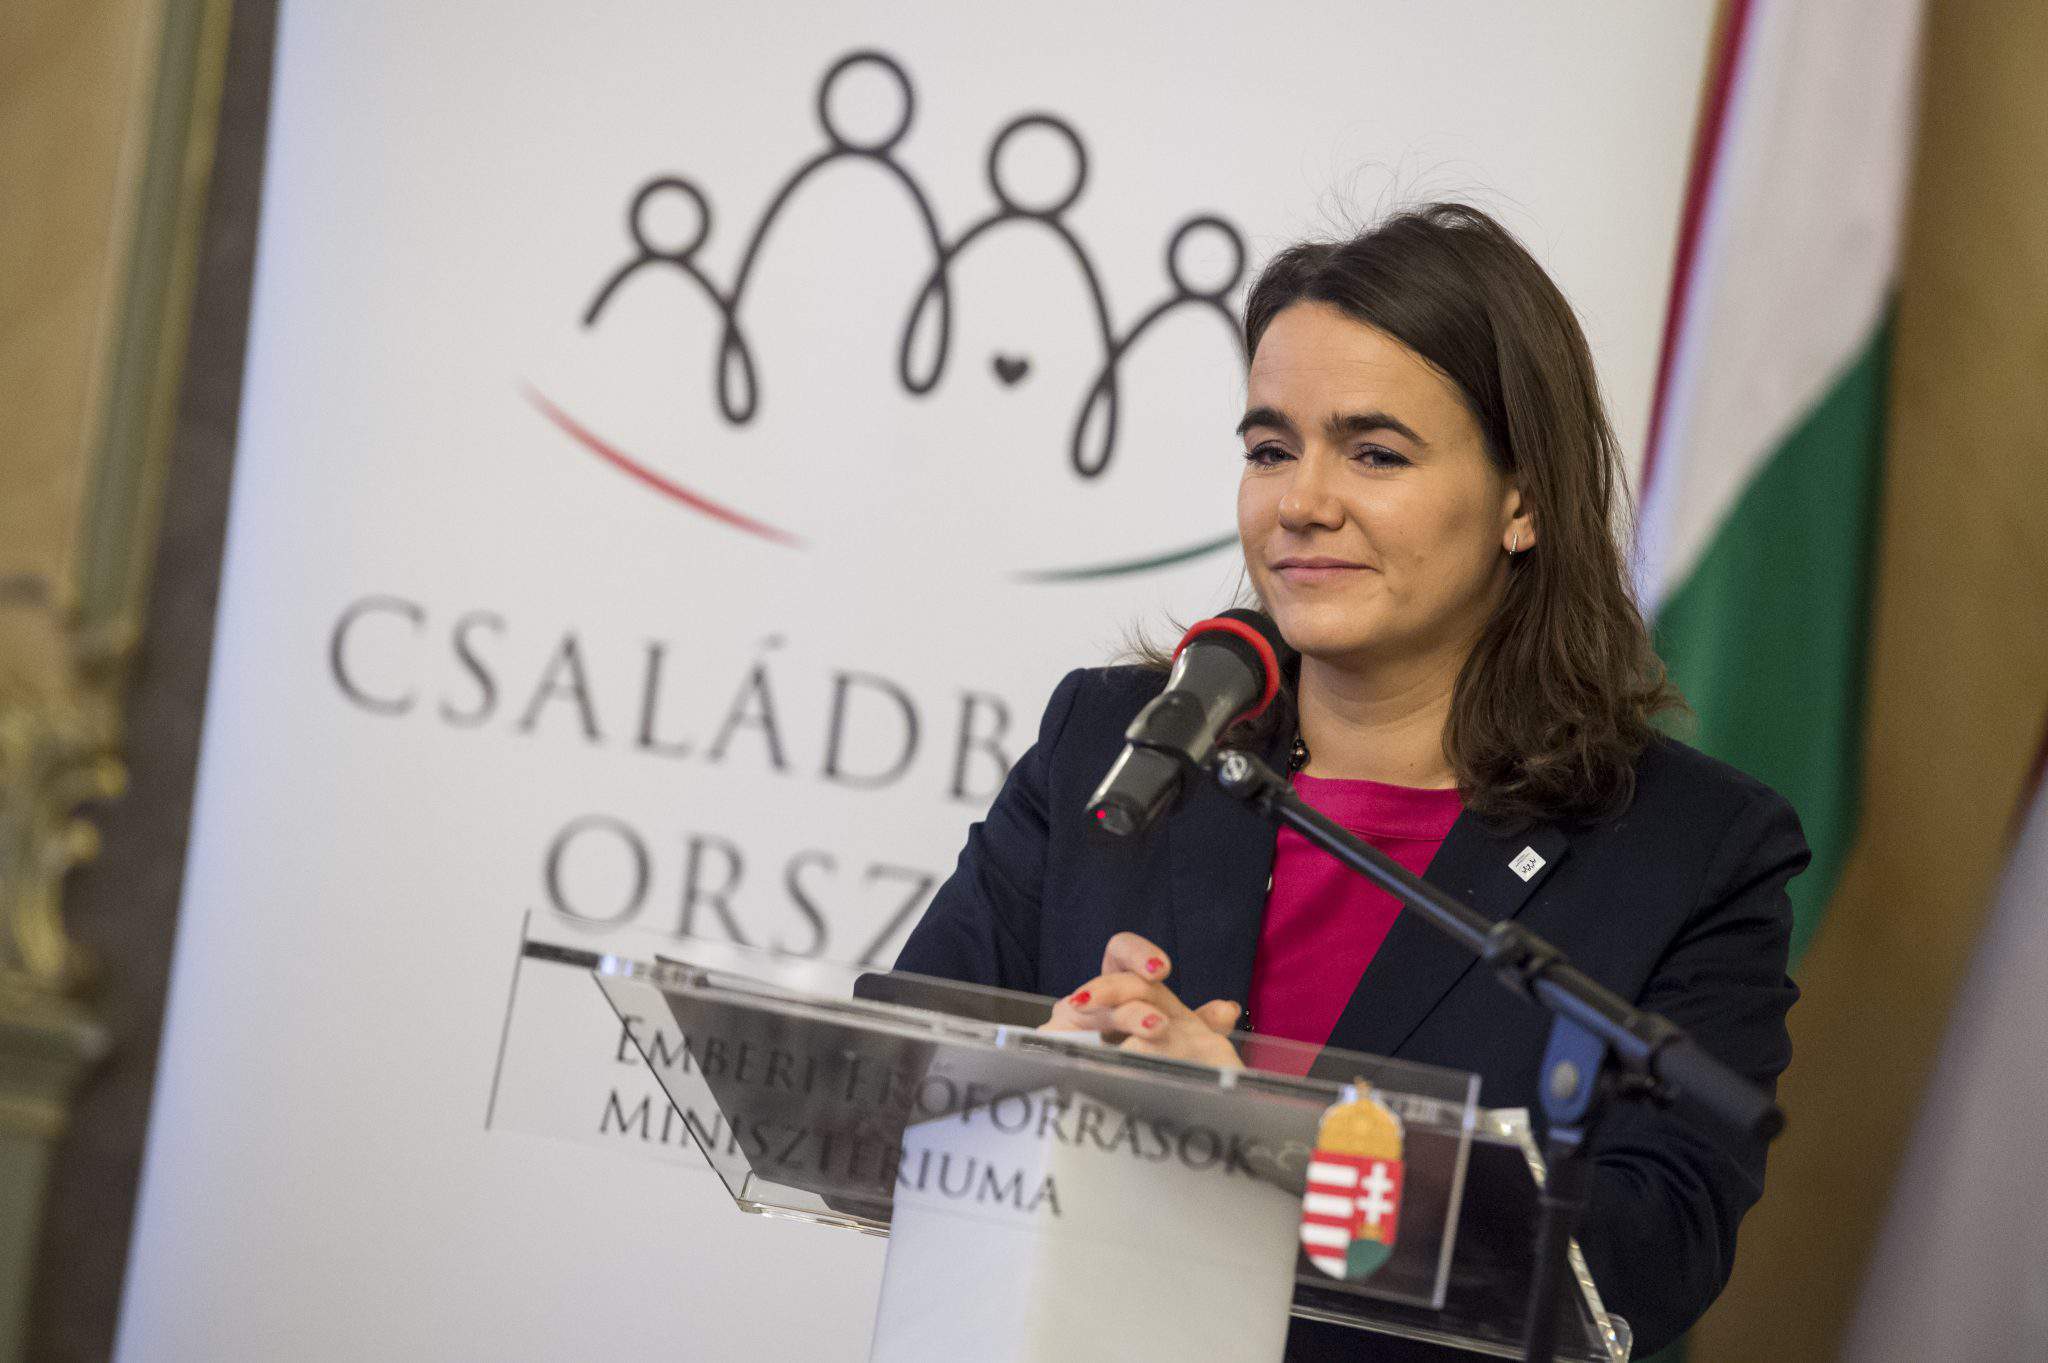 Katalin Novak, secretar de stat pentru familii și tineret